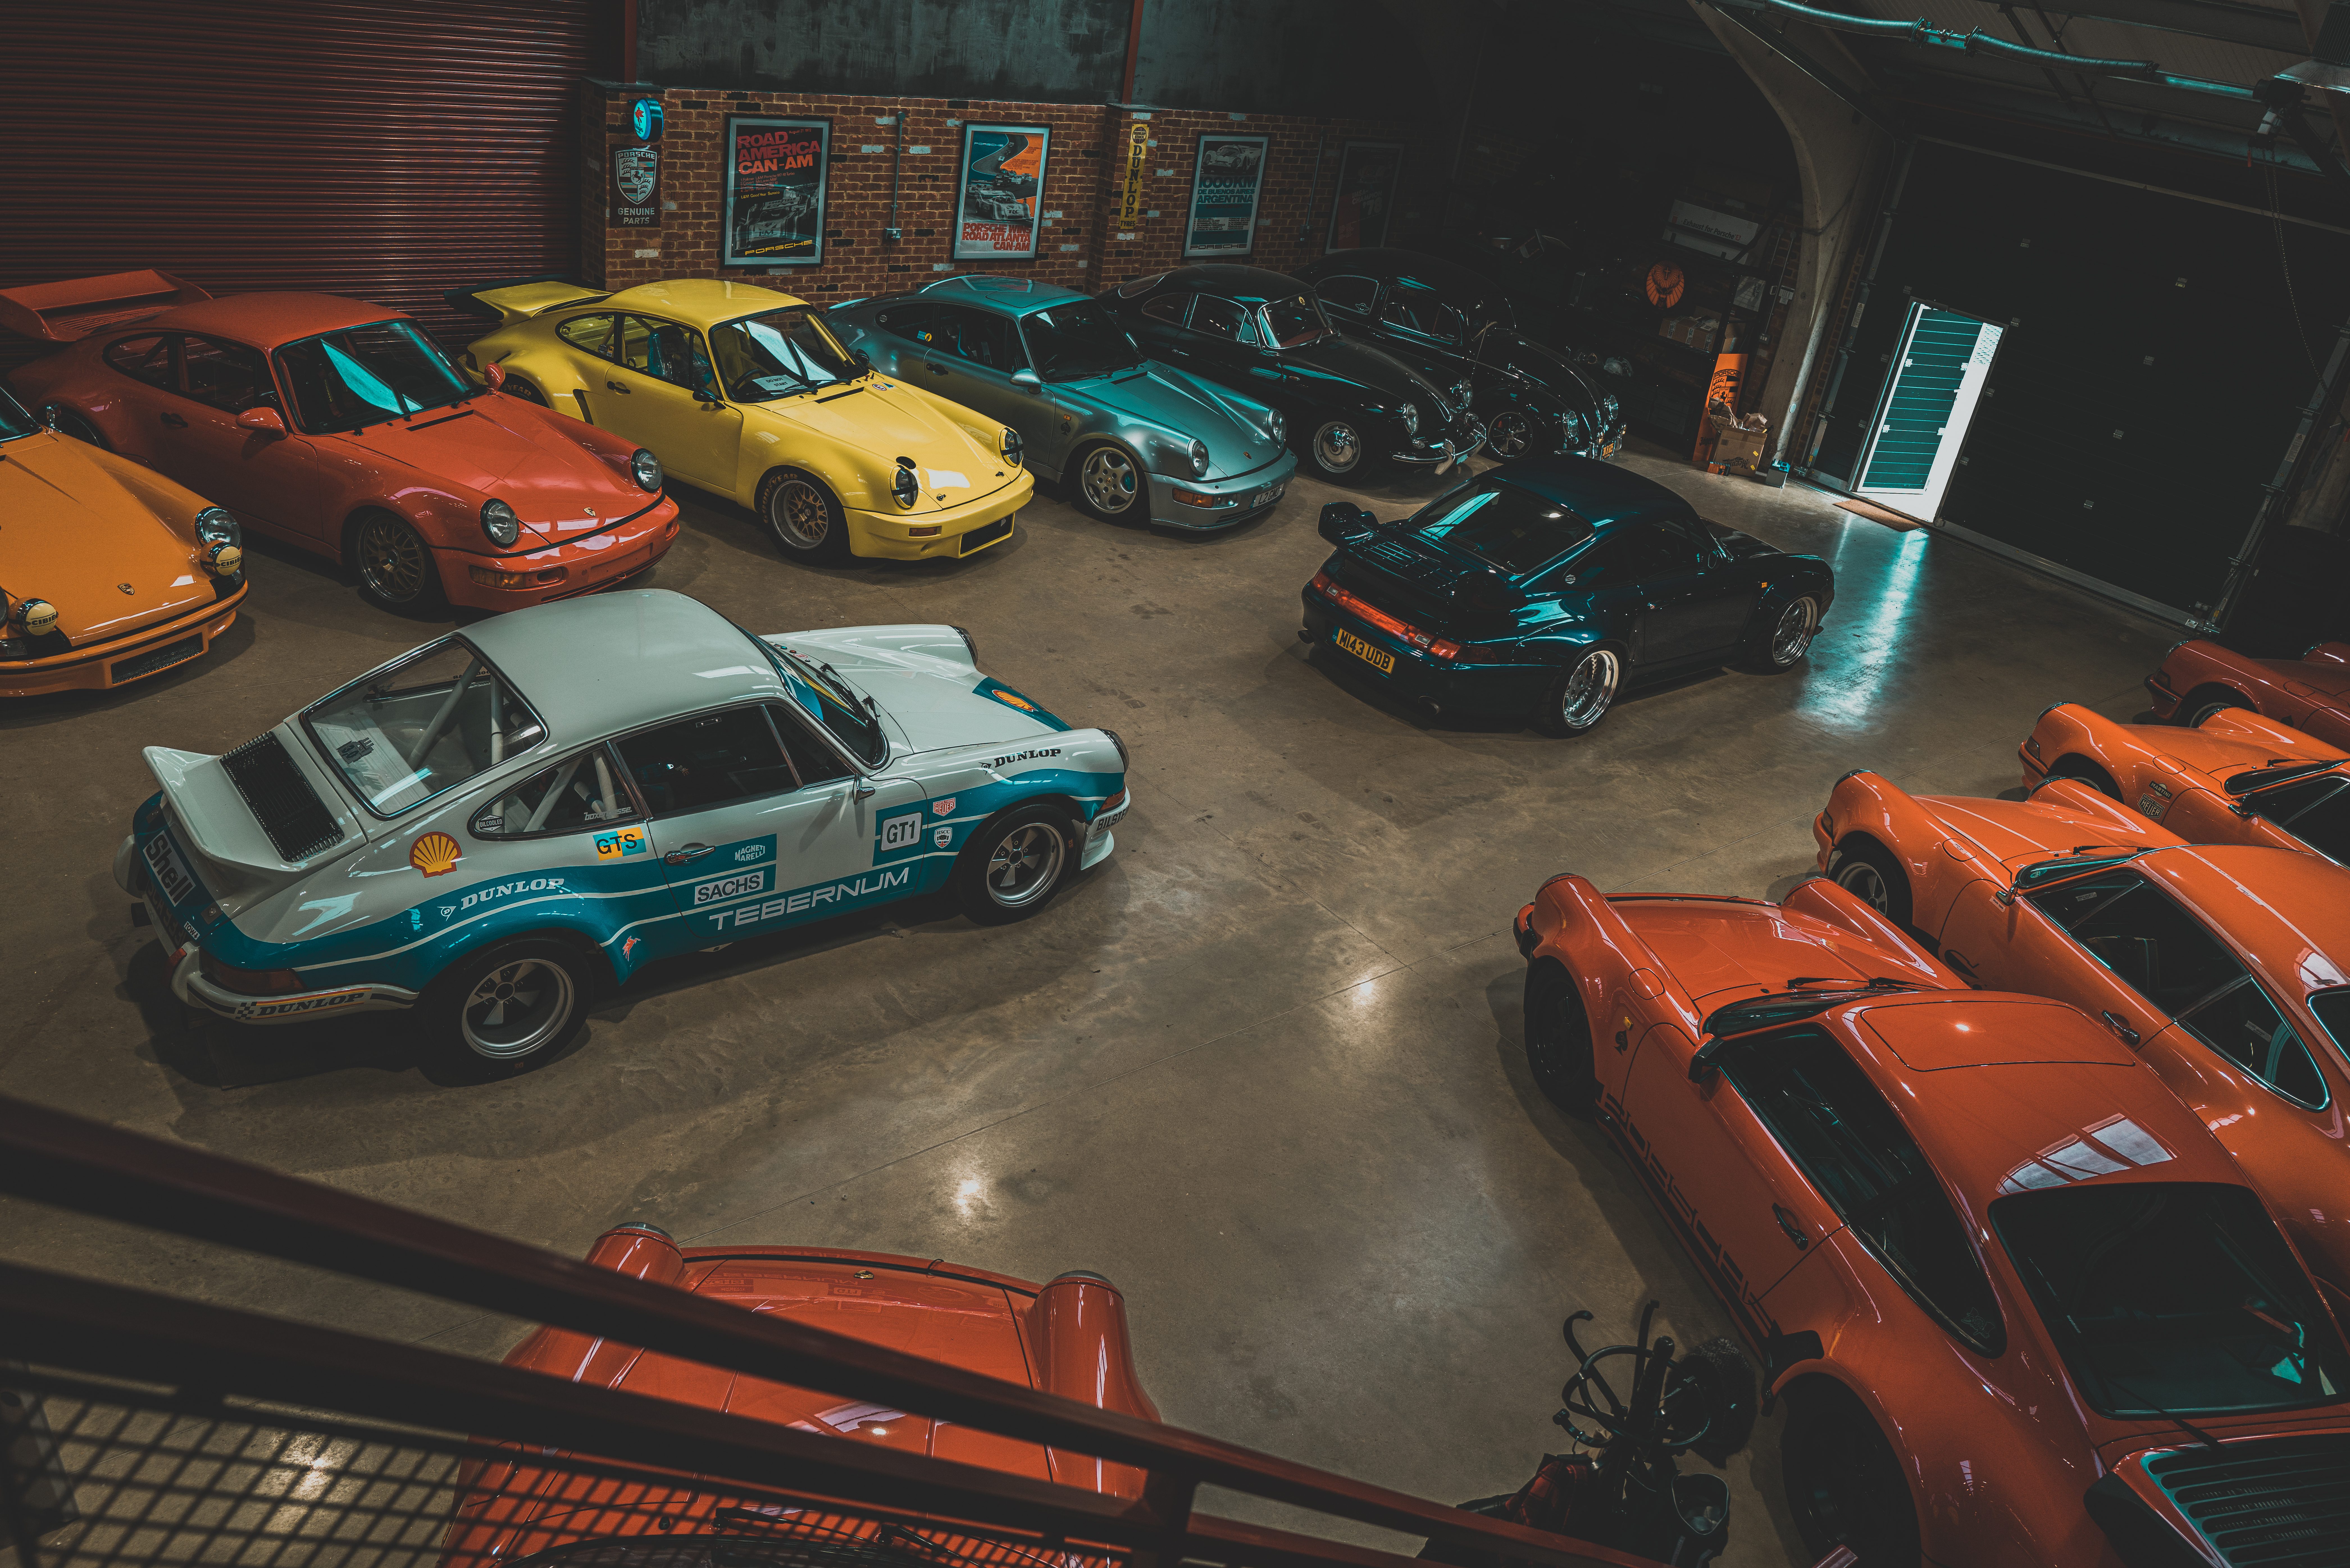 A collection of classic Porsche cars sat inside a hangar